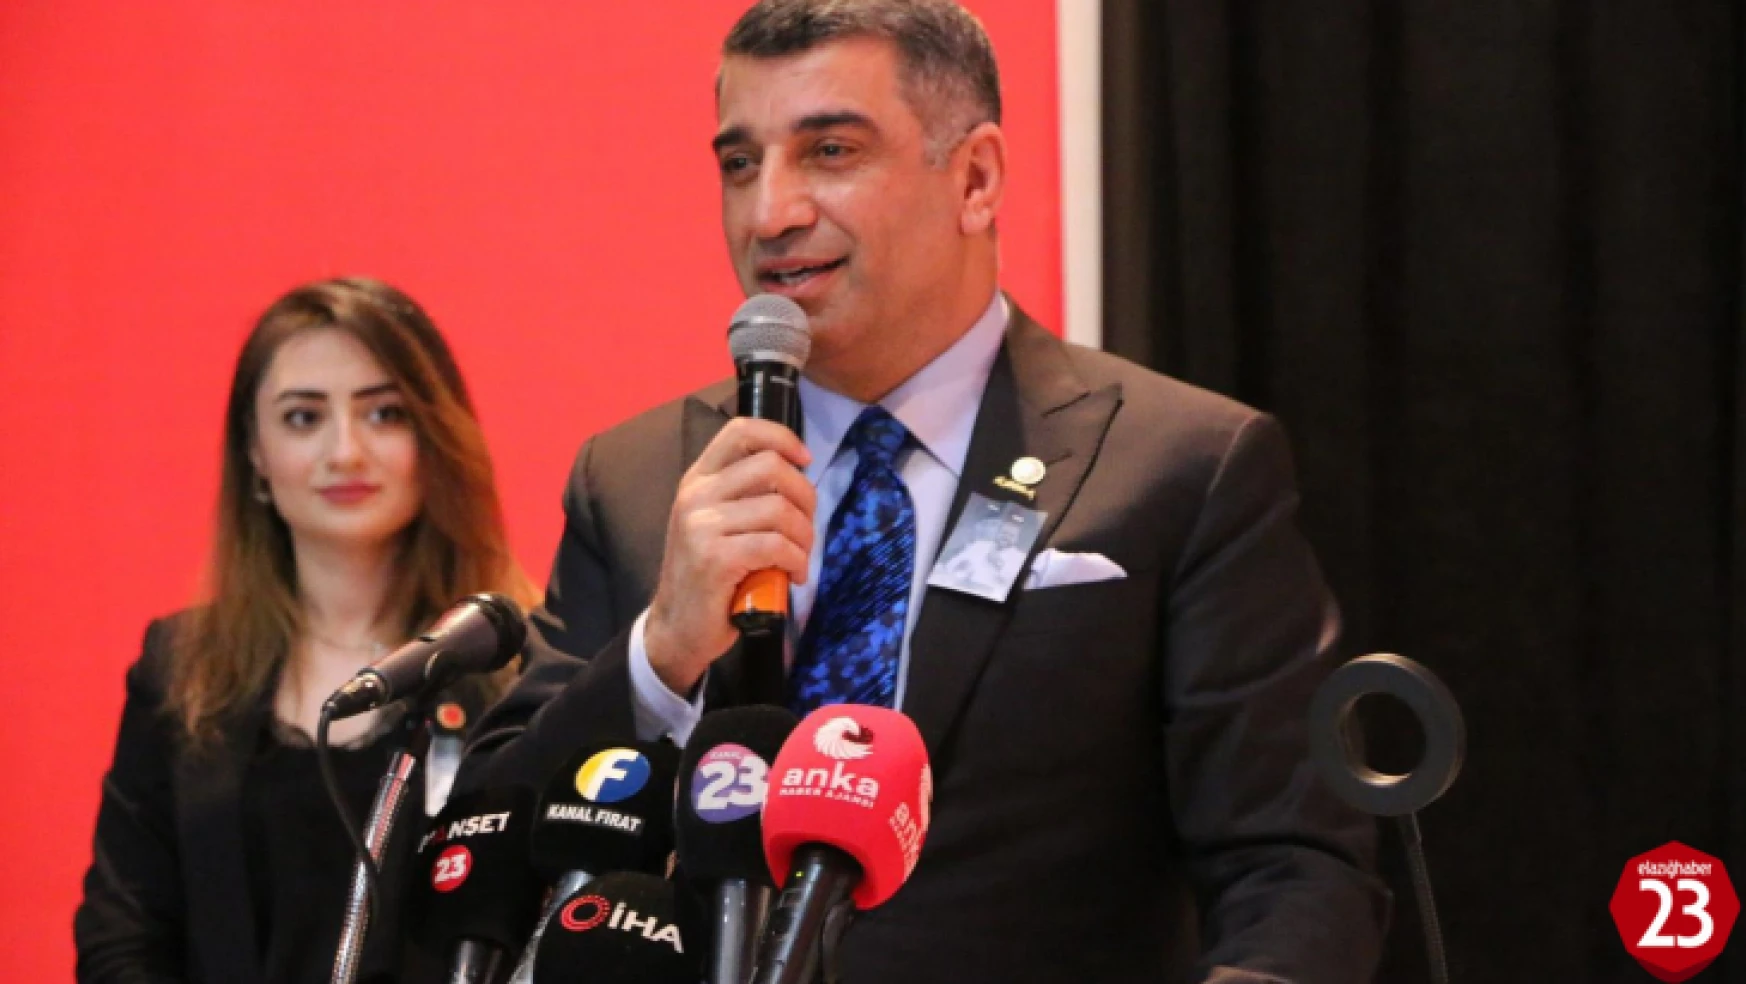 Milletvekili Erol, 13. Cumhurbaşkanı, Elazığ Ticaret Lisesi'ni 1'incilikle Bitiren Kemal Kılıçdaroğlu Olacaktır